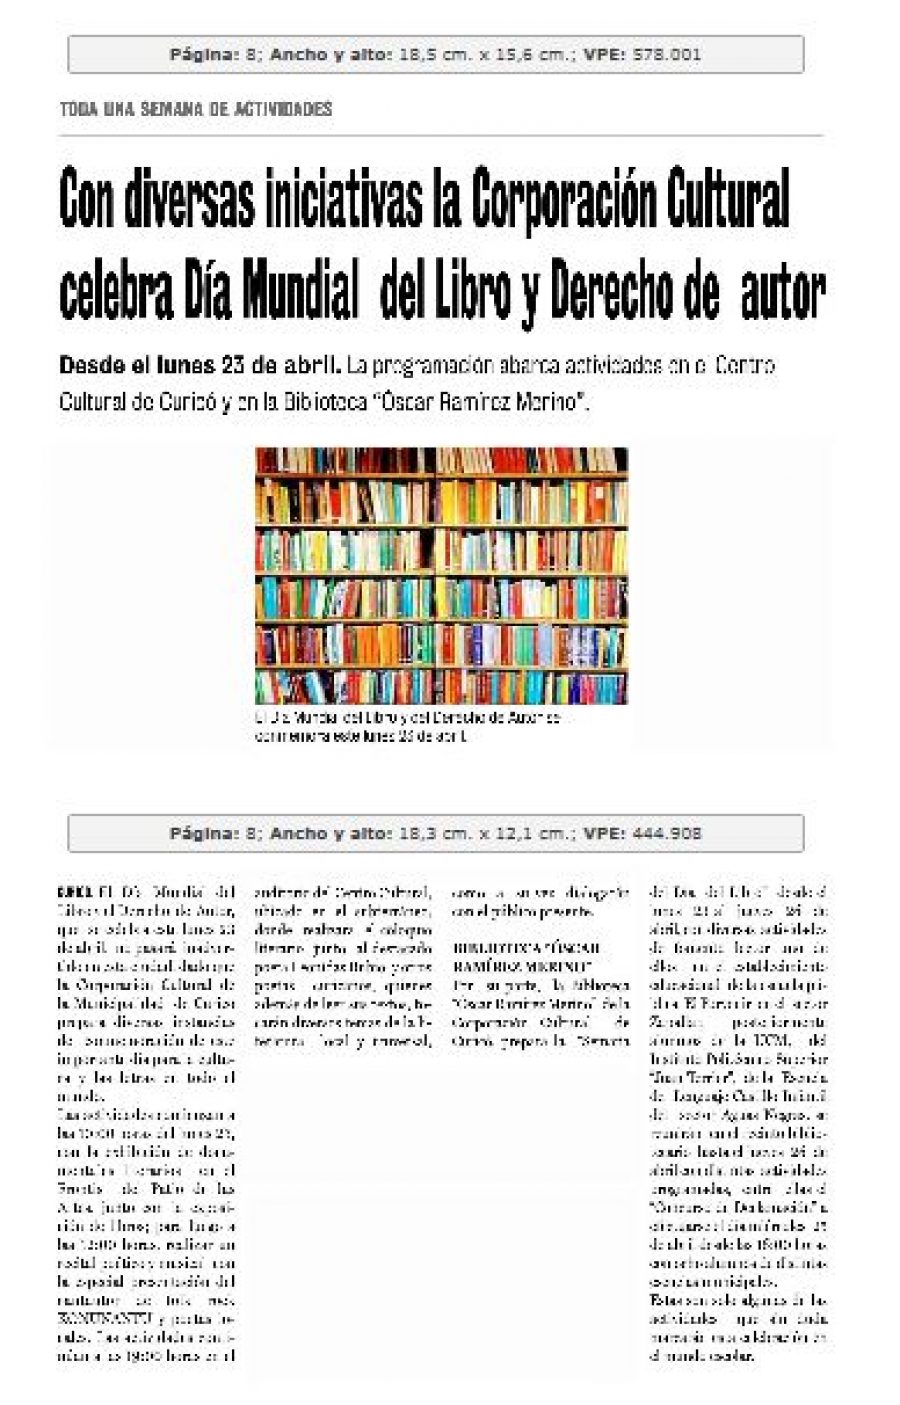 21 de abril en Diario La Prensa: “Con diversas iniciativas la Corporación Cultural celebra el Día Mundial del Libro y Derecho de autor”